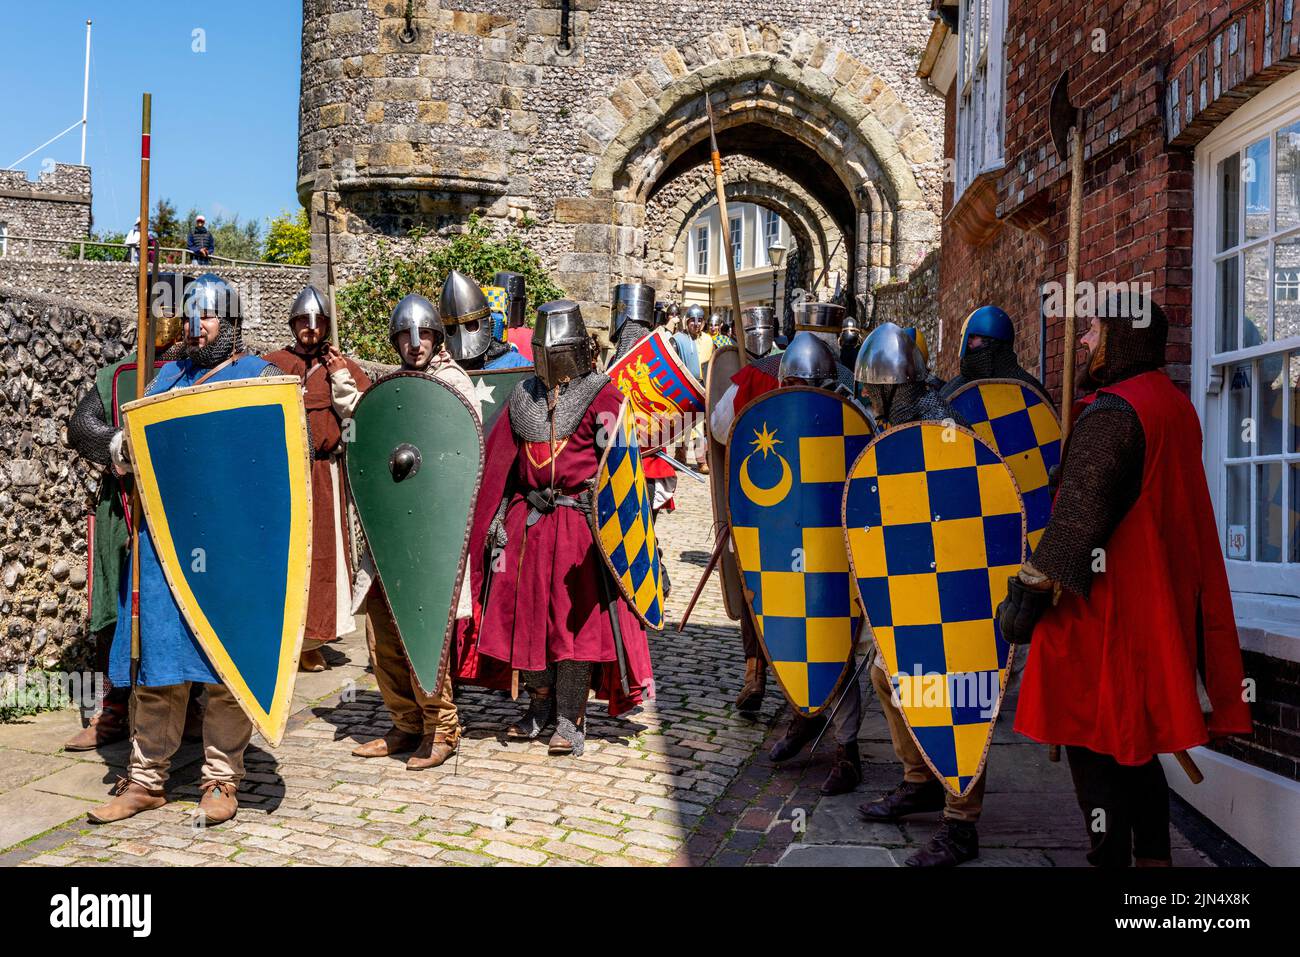 Les hommes vêtus de costume médiéval se préparent à prendre part à Une reconstitution de la bataille de Lewes datant du 13th siècle, à l'extérieur du château, à Lewes, dans l'est du Sussex, au Royaume-Uni Banque D'Images